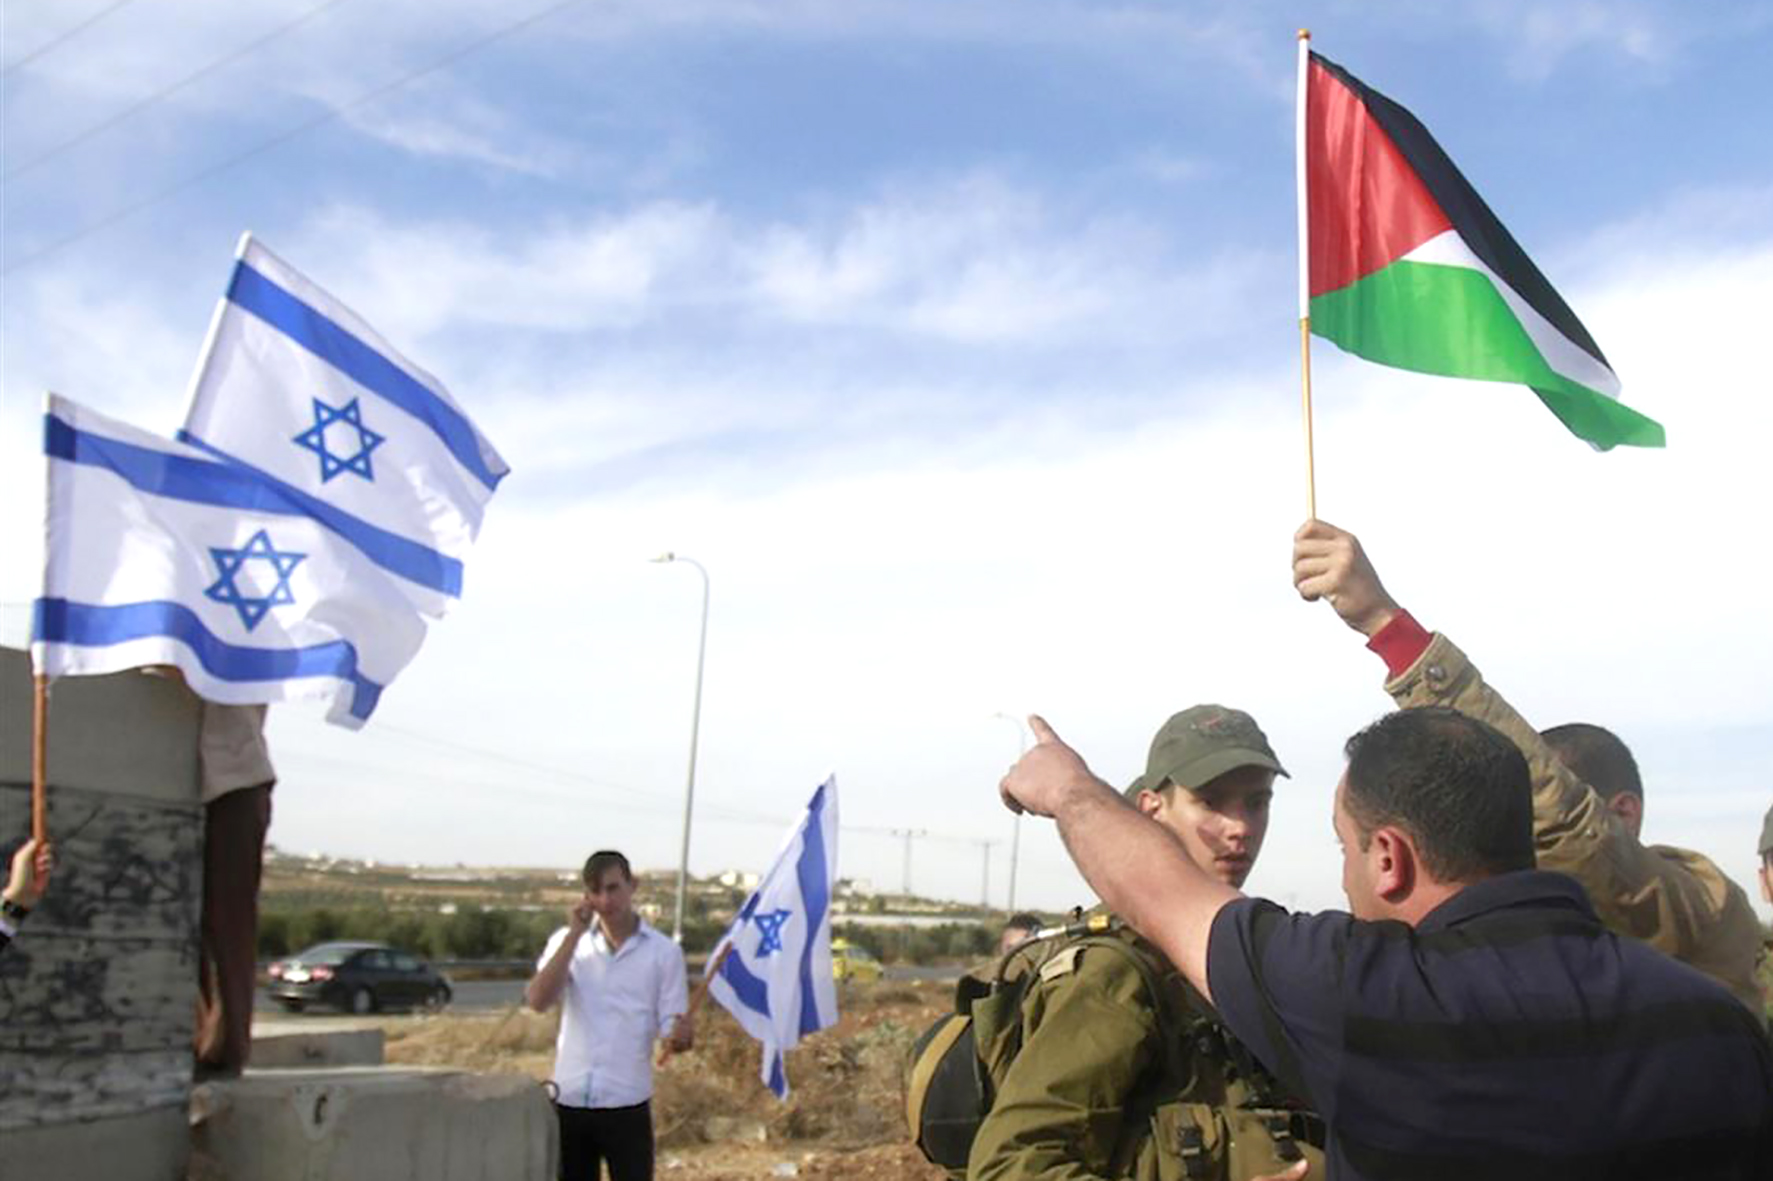 L'Onu avverte ancora Israele: "Deve proteggere i palestinesi dalle violenze dei coloni"